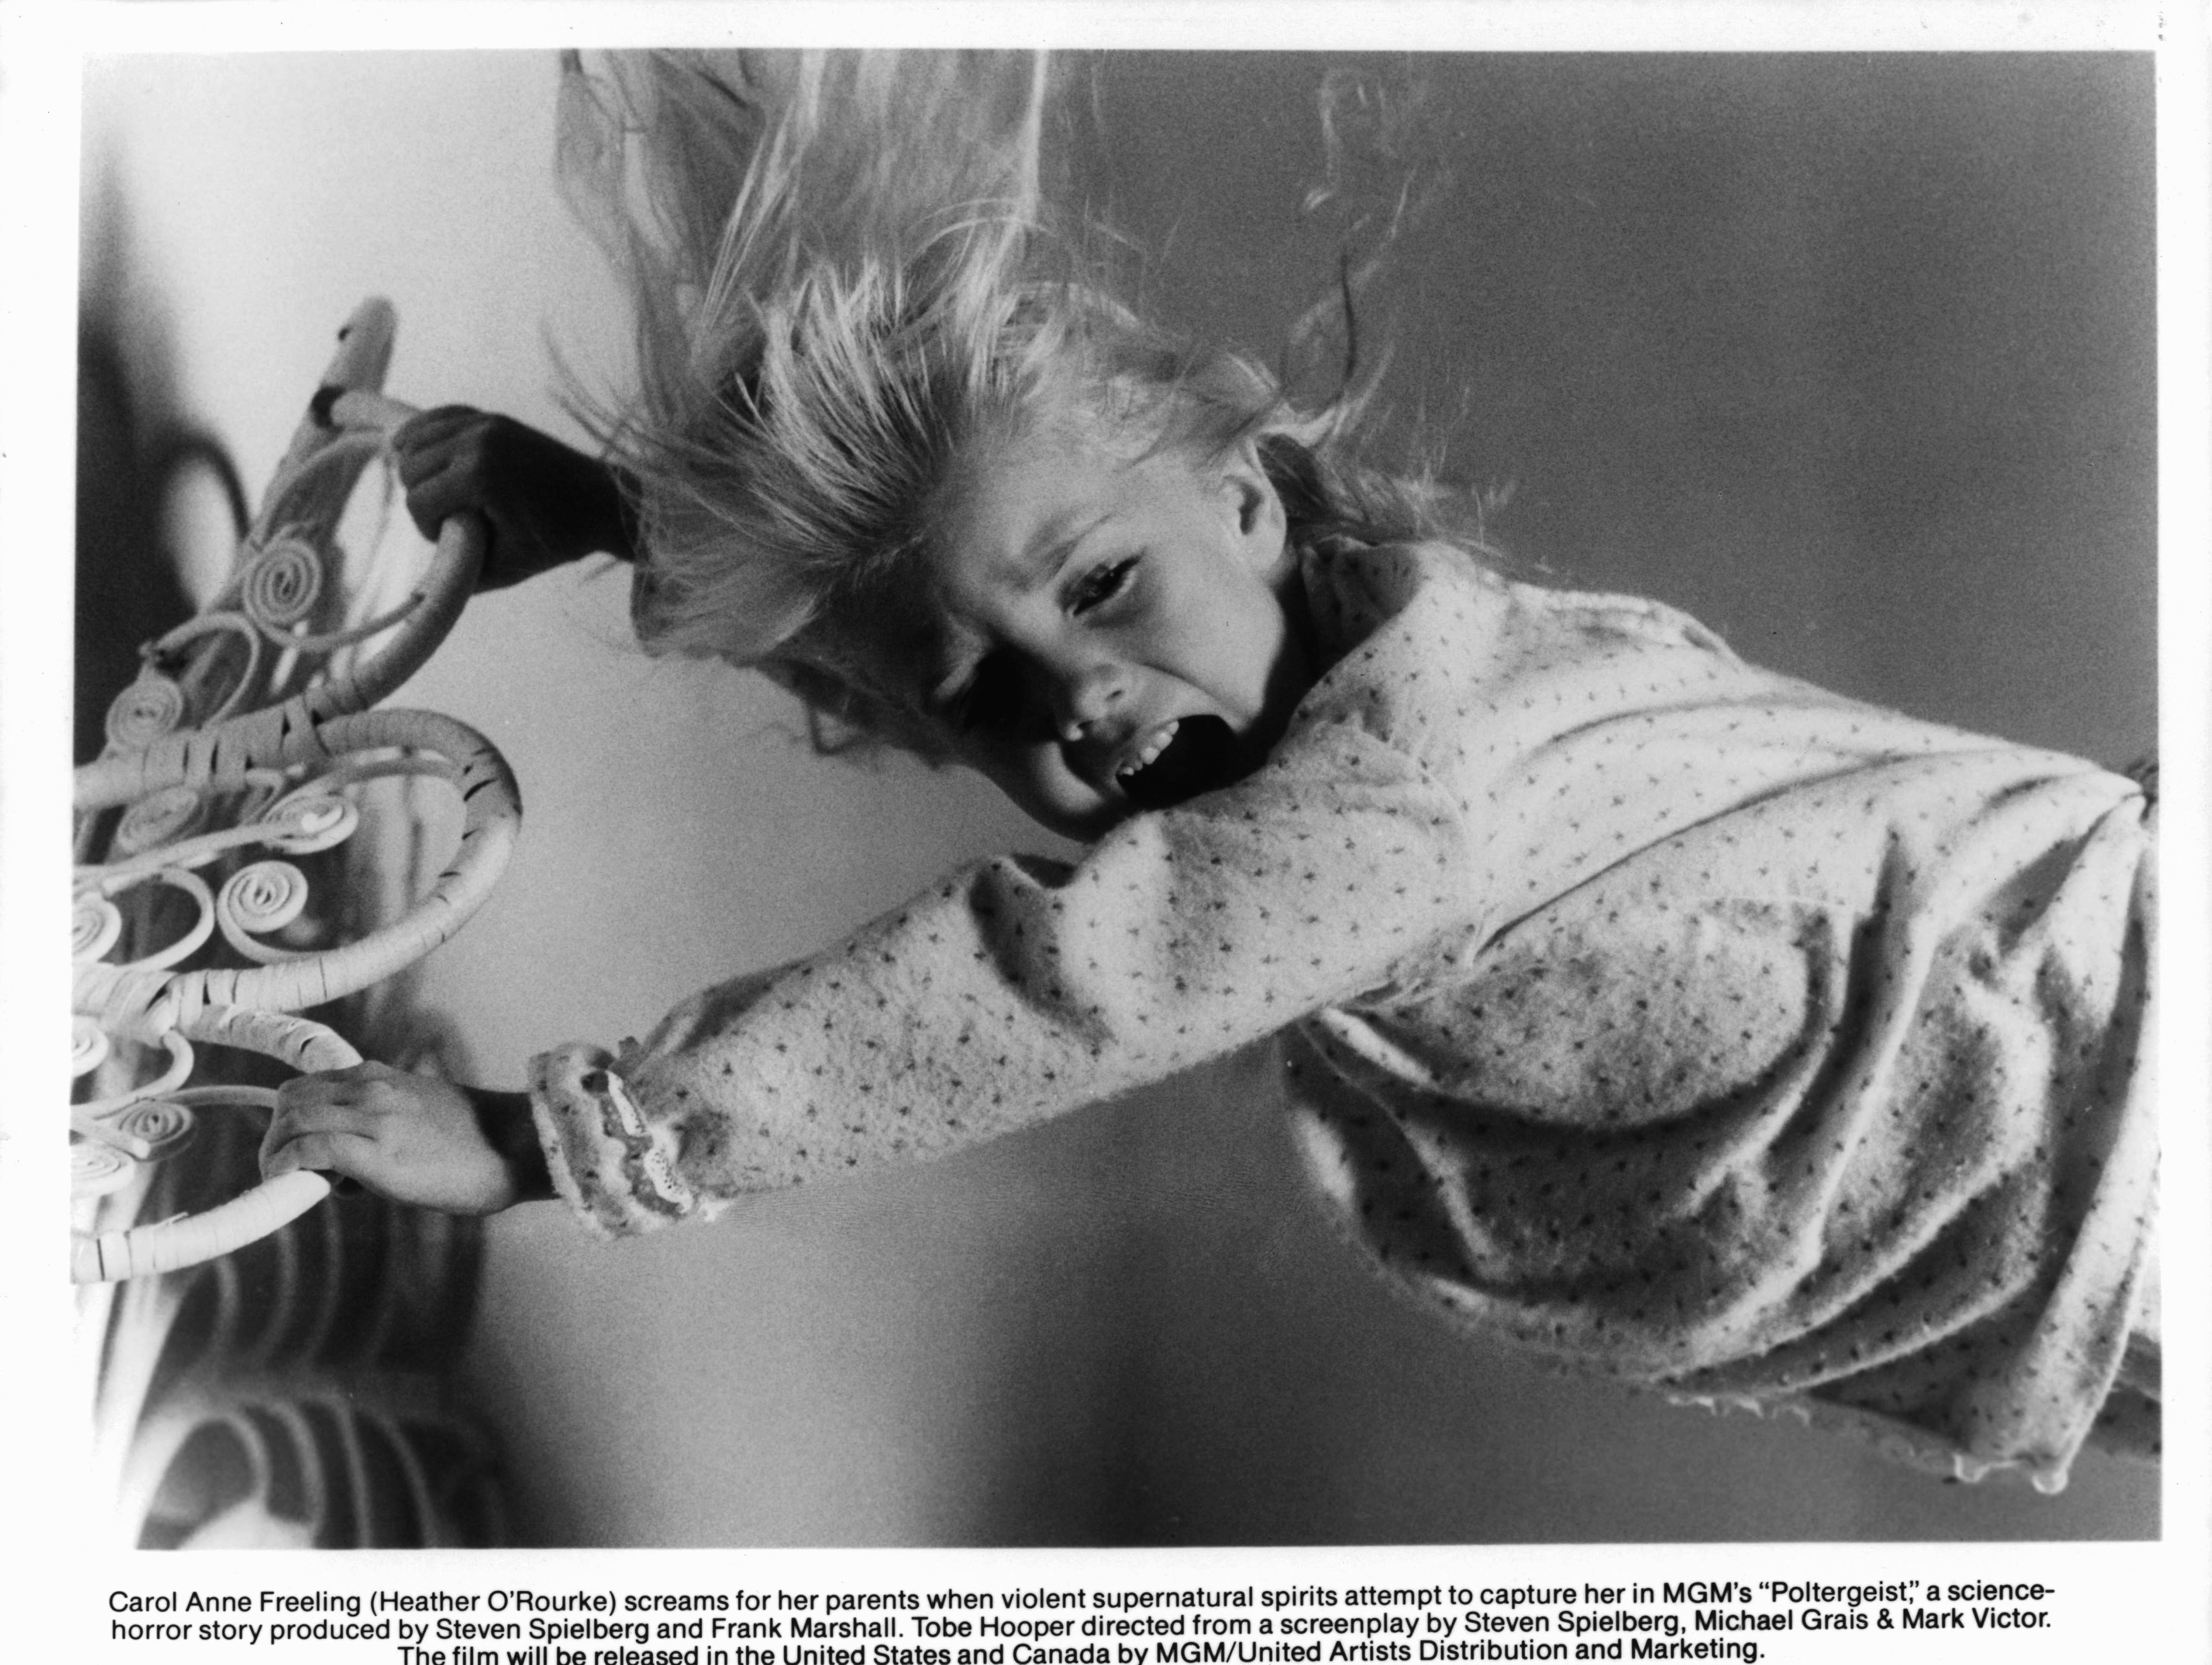 Heather O'Rourke dans une scène du film "Poltergeist" en 1982 | Source : Getty Images